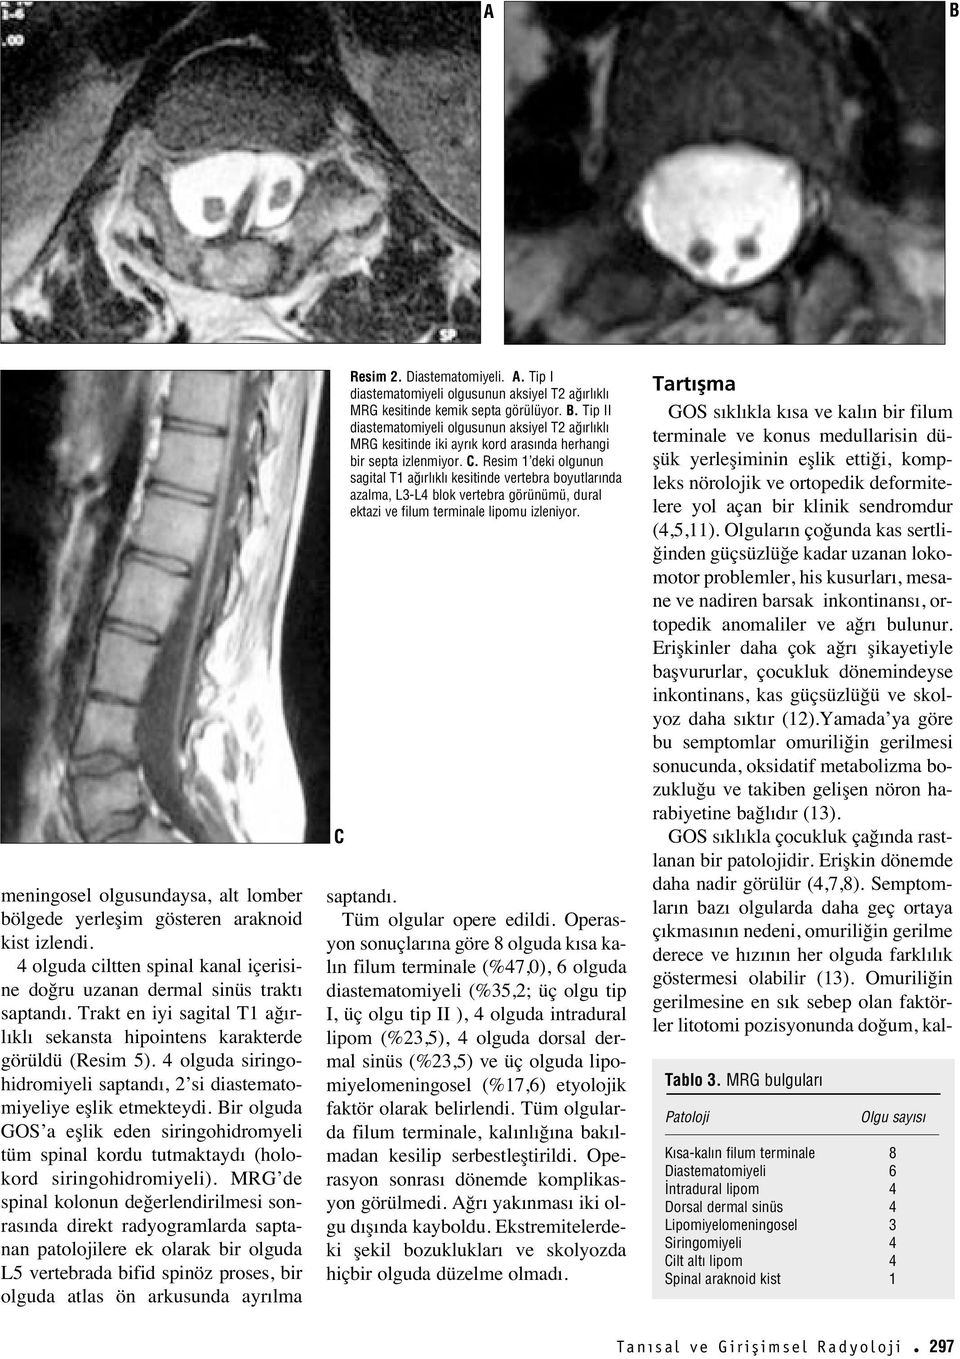 Bir olguda GOS a eşlik eden siringohidromyeli tüm spinal kordu tutmaktayd (holokord siringohidromiyeli).